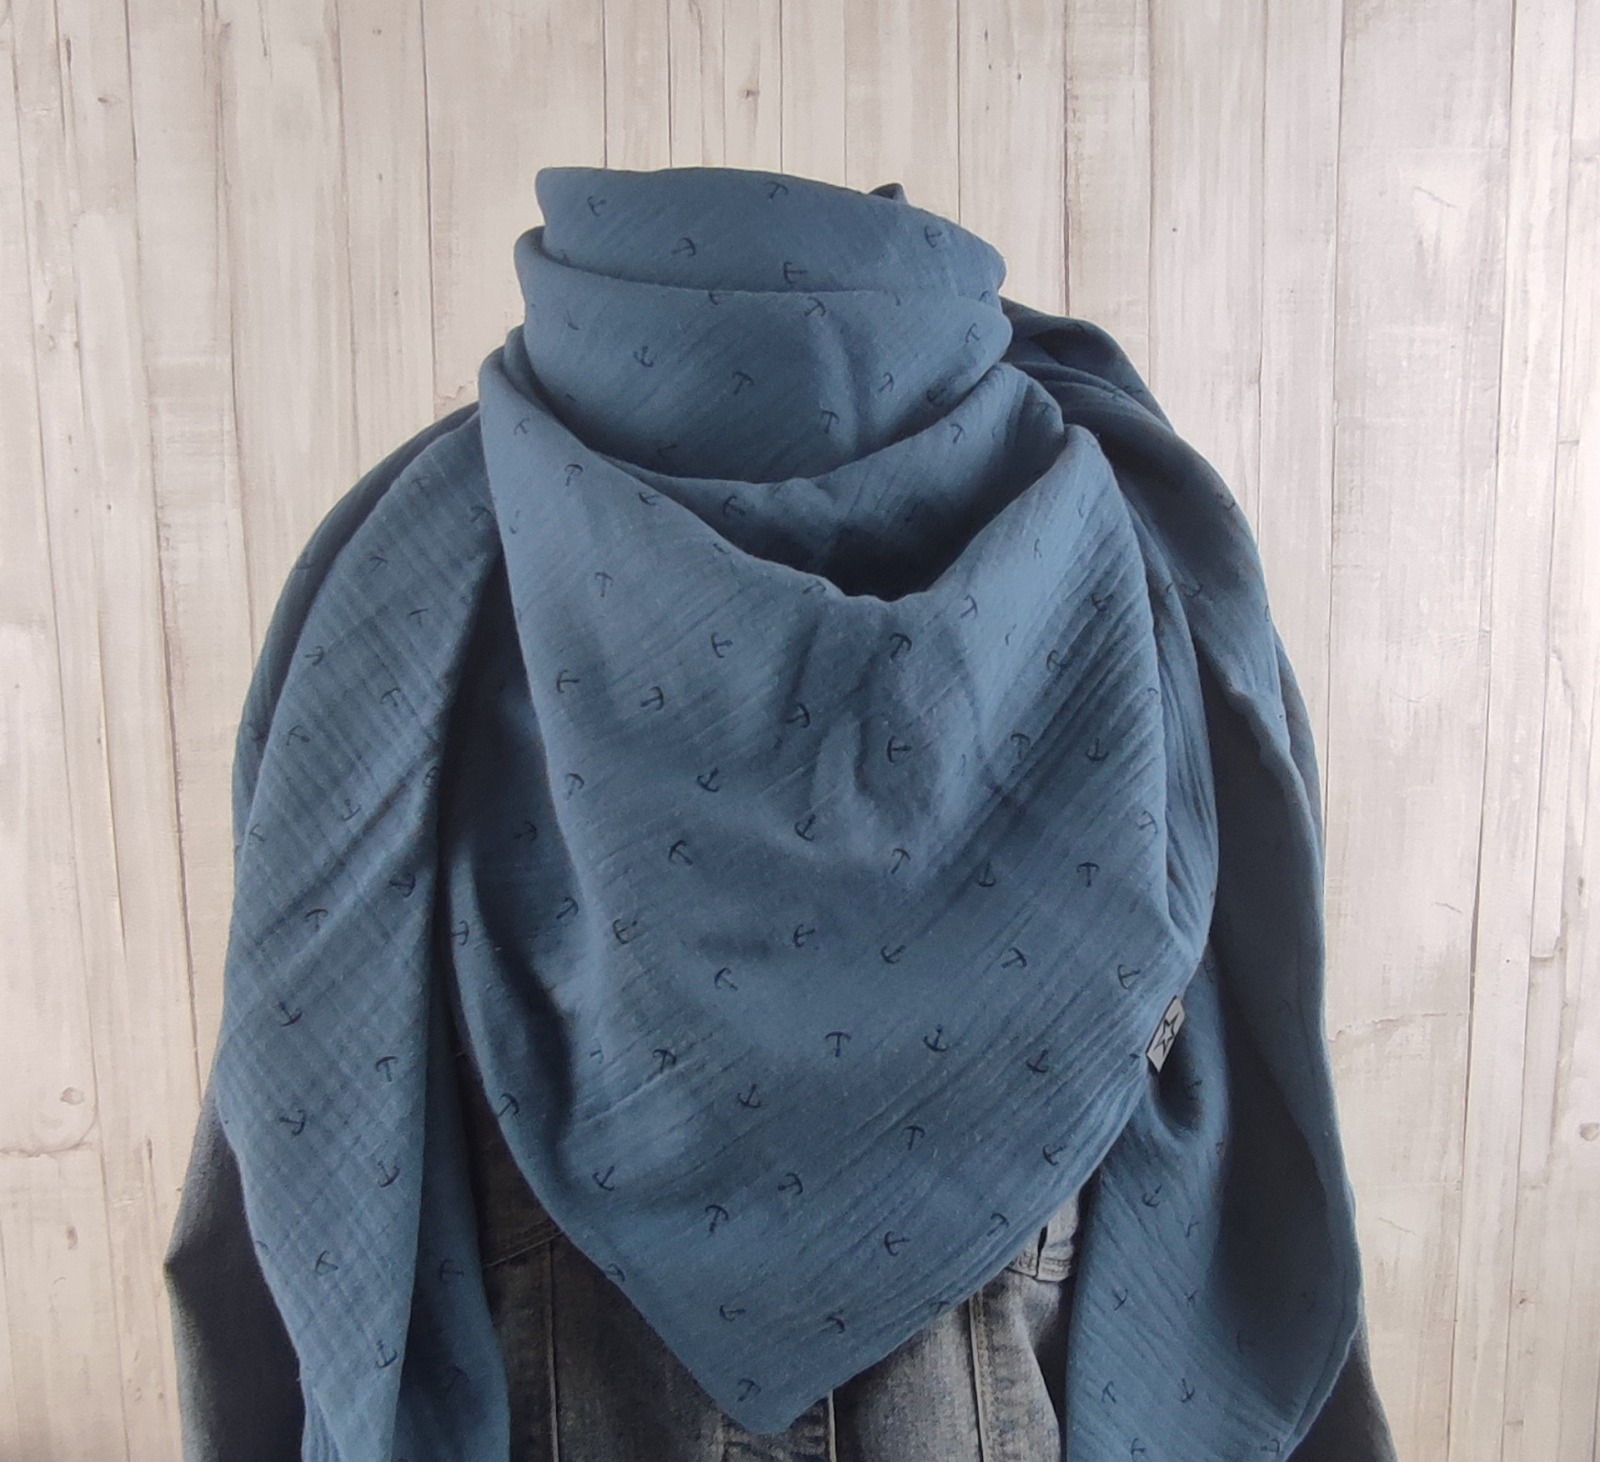 Tuch Anker - Dreieckstuch Musselin Damen - Schal jeansblau mit Ankern in dunkelblau - XXL Tuch aus Baumwolle - Mamatuch